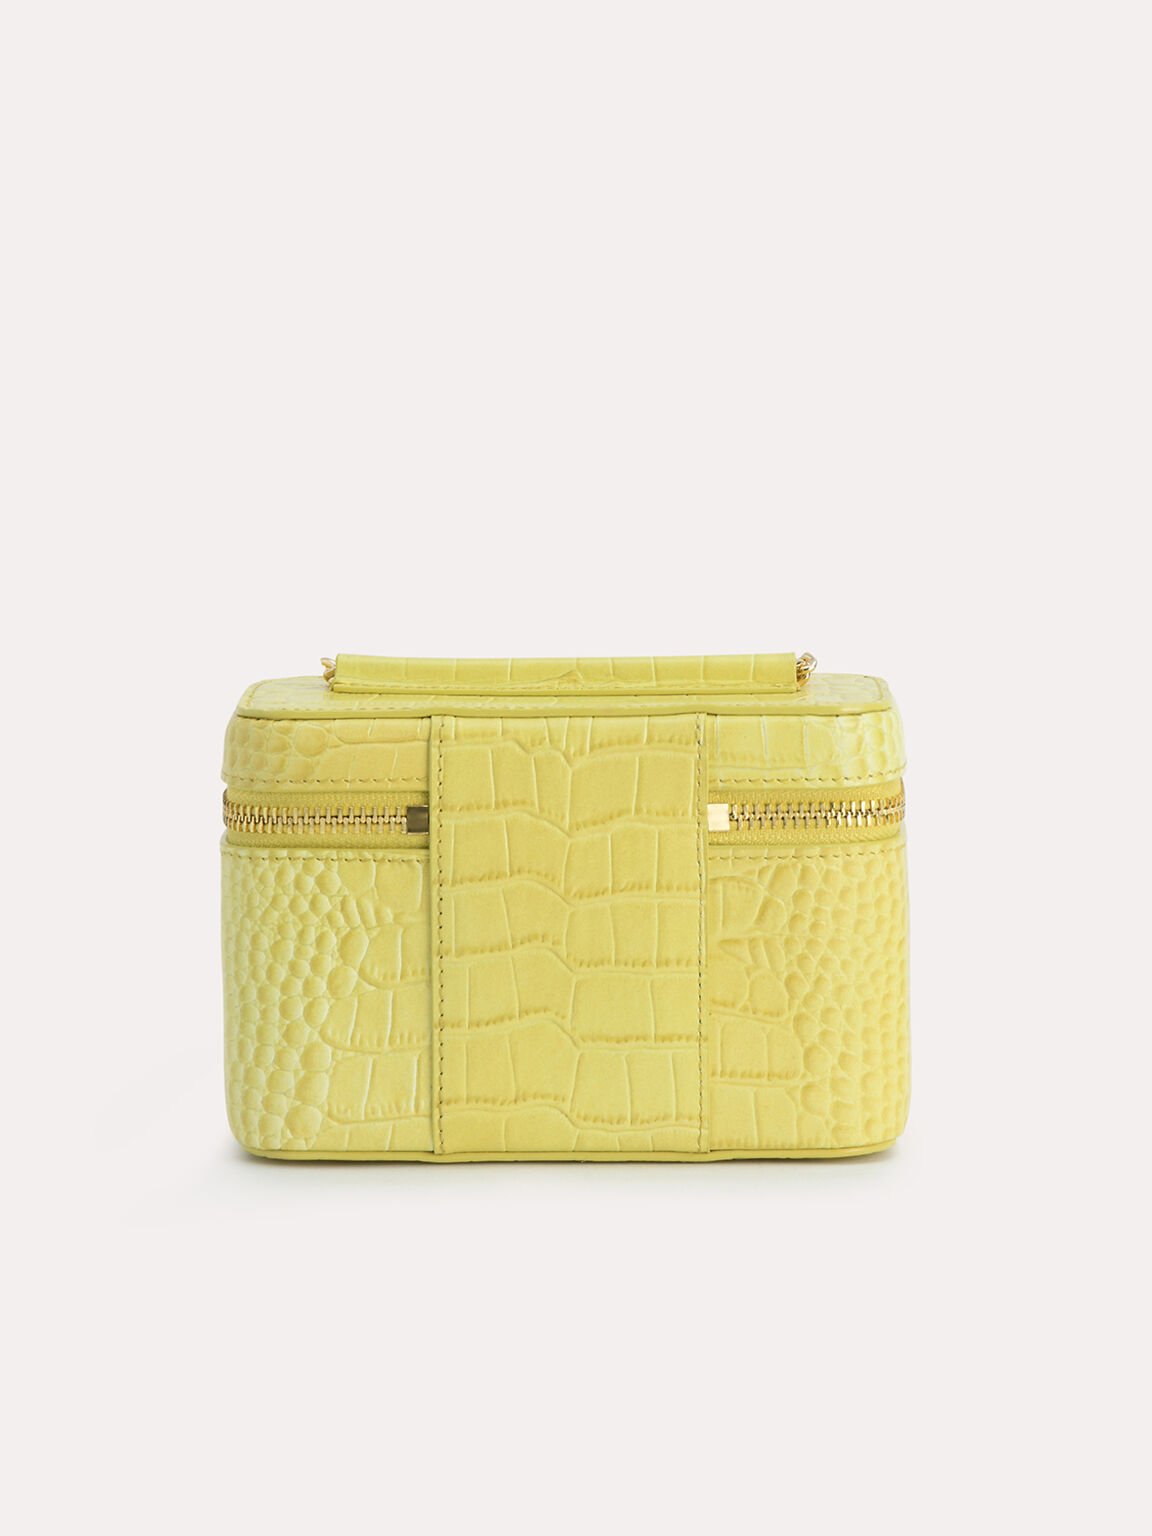 Textured Leather Vanity Case, Yellow